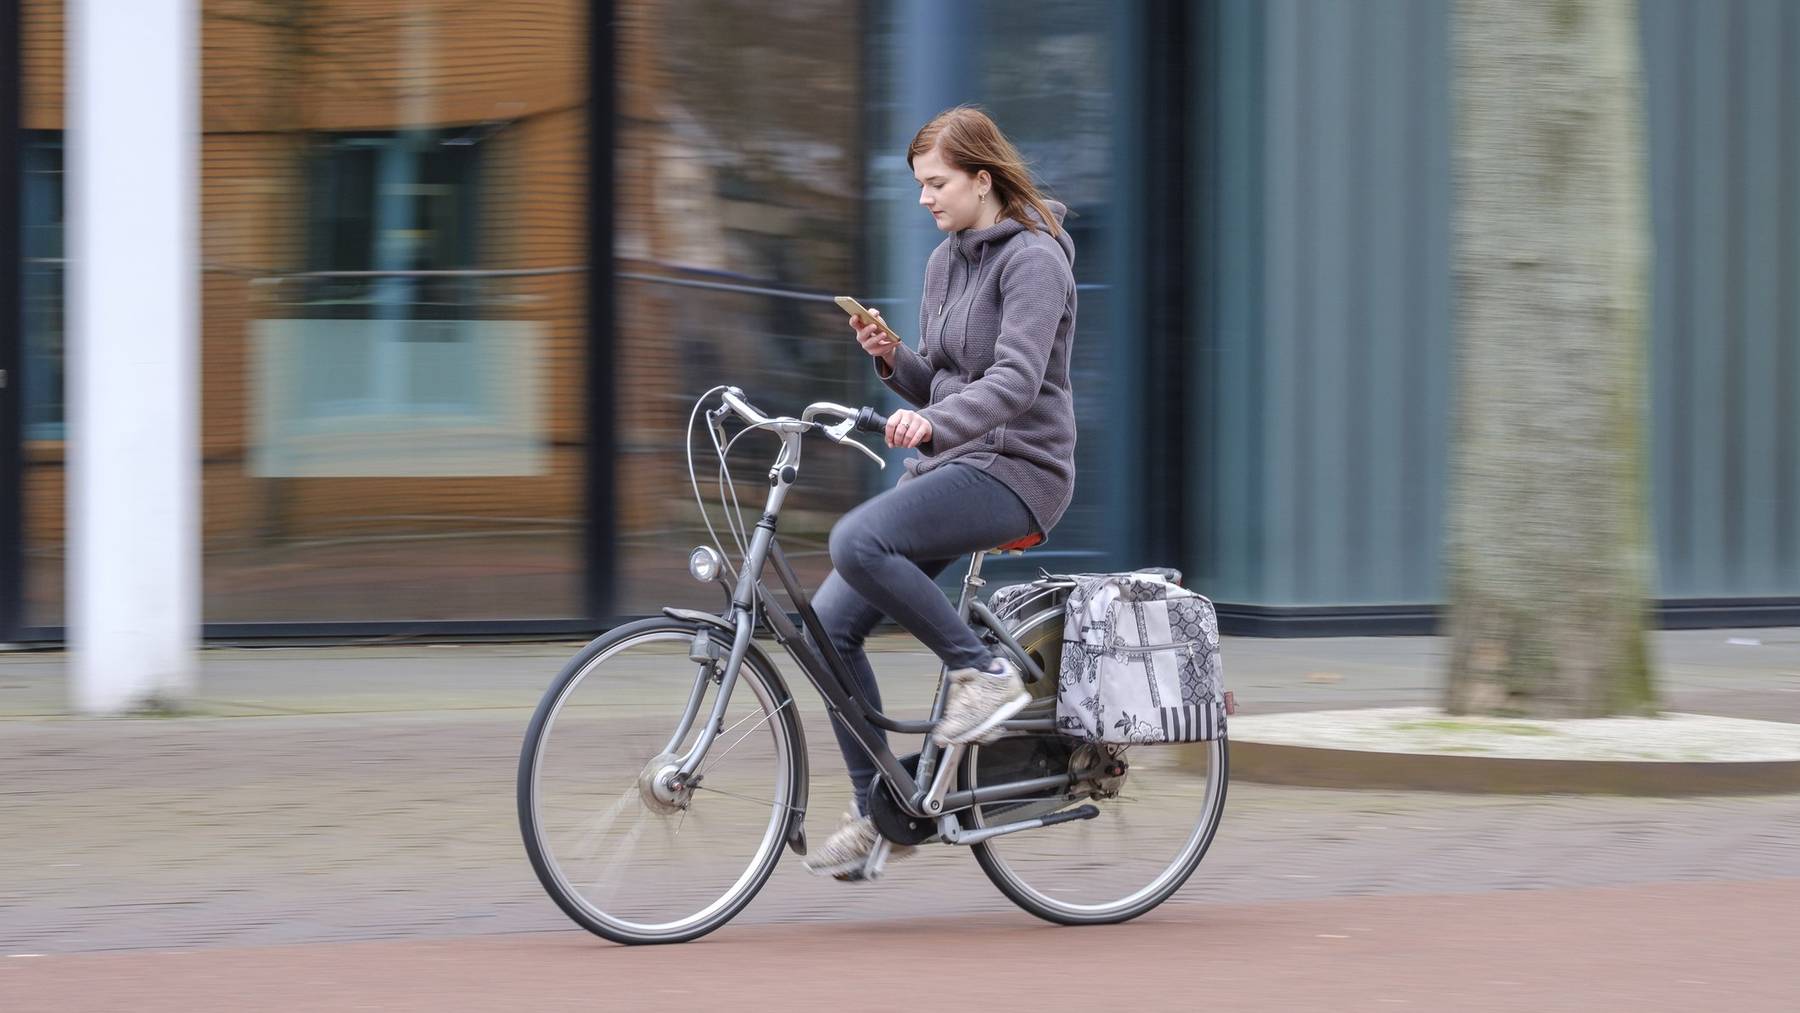 Velofahrer, die in den Niederlanden am Handy sind, könnten künftig gebüsst werden. (Symbolbild)